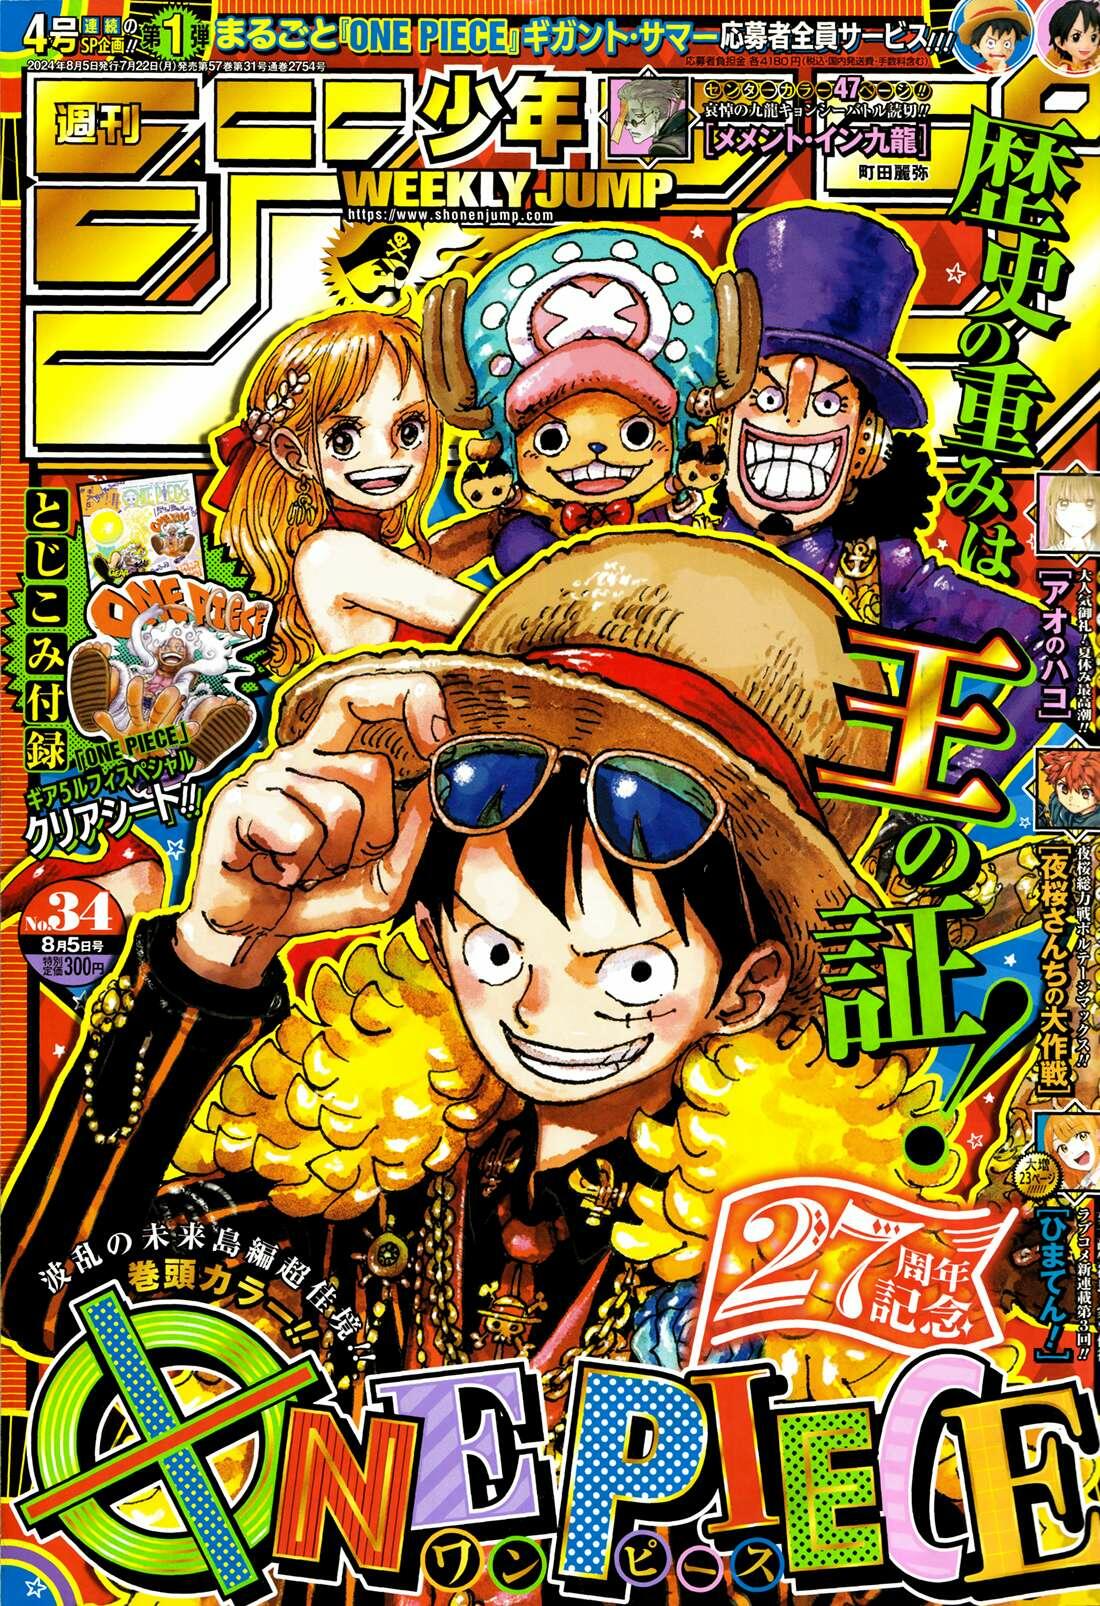 Read One Piece Chapter 1121 on Mangakakalot